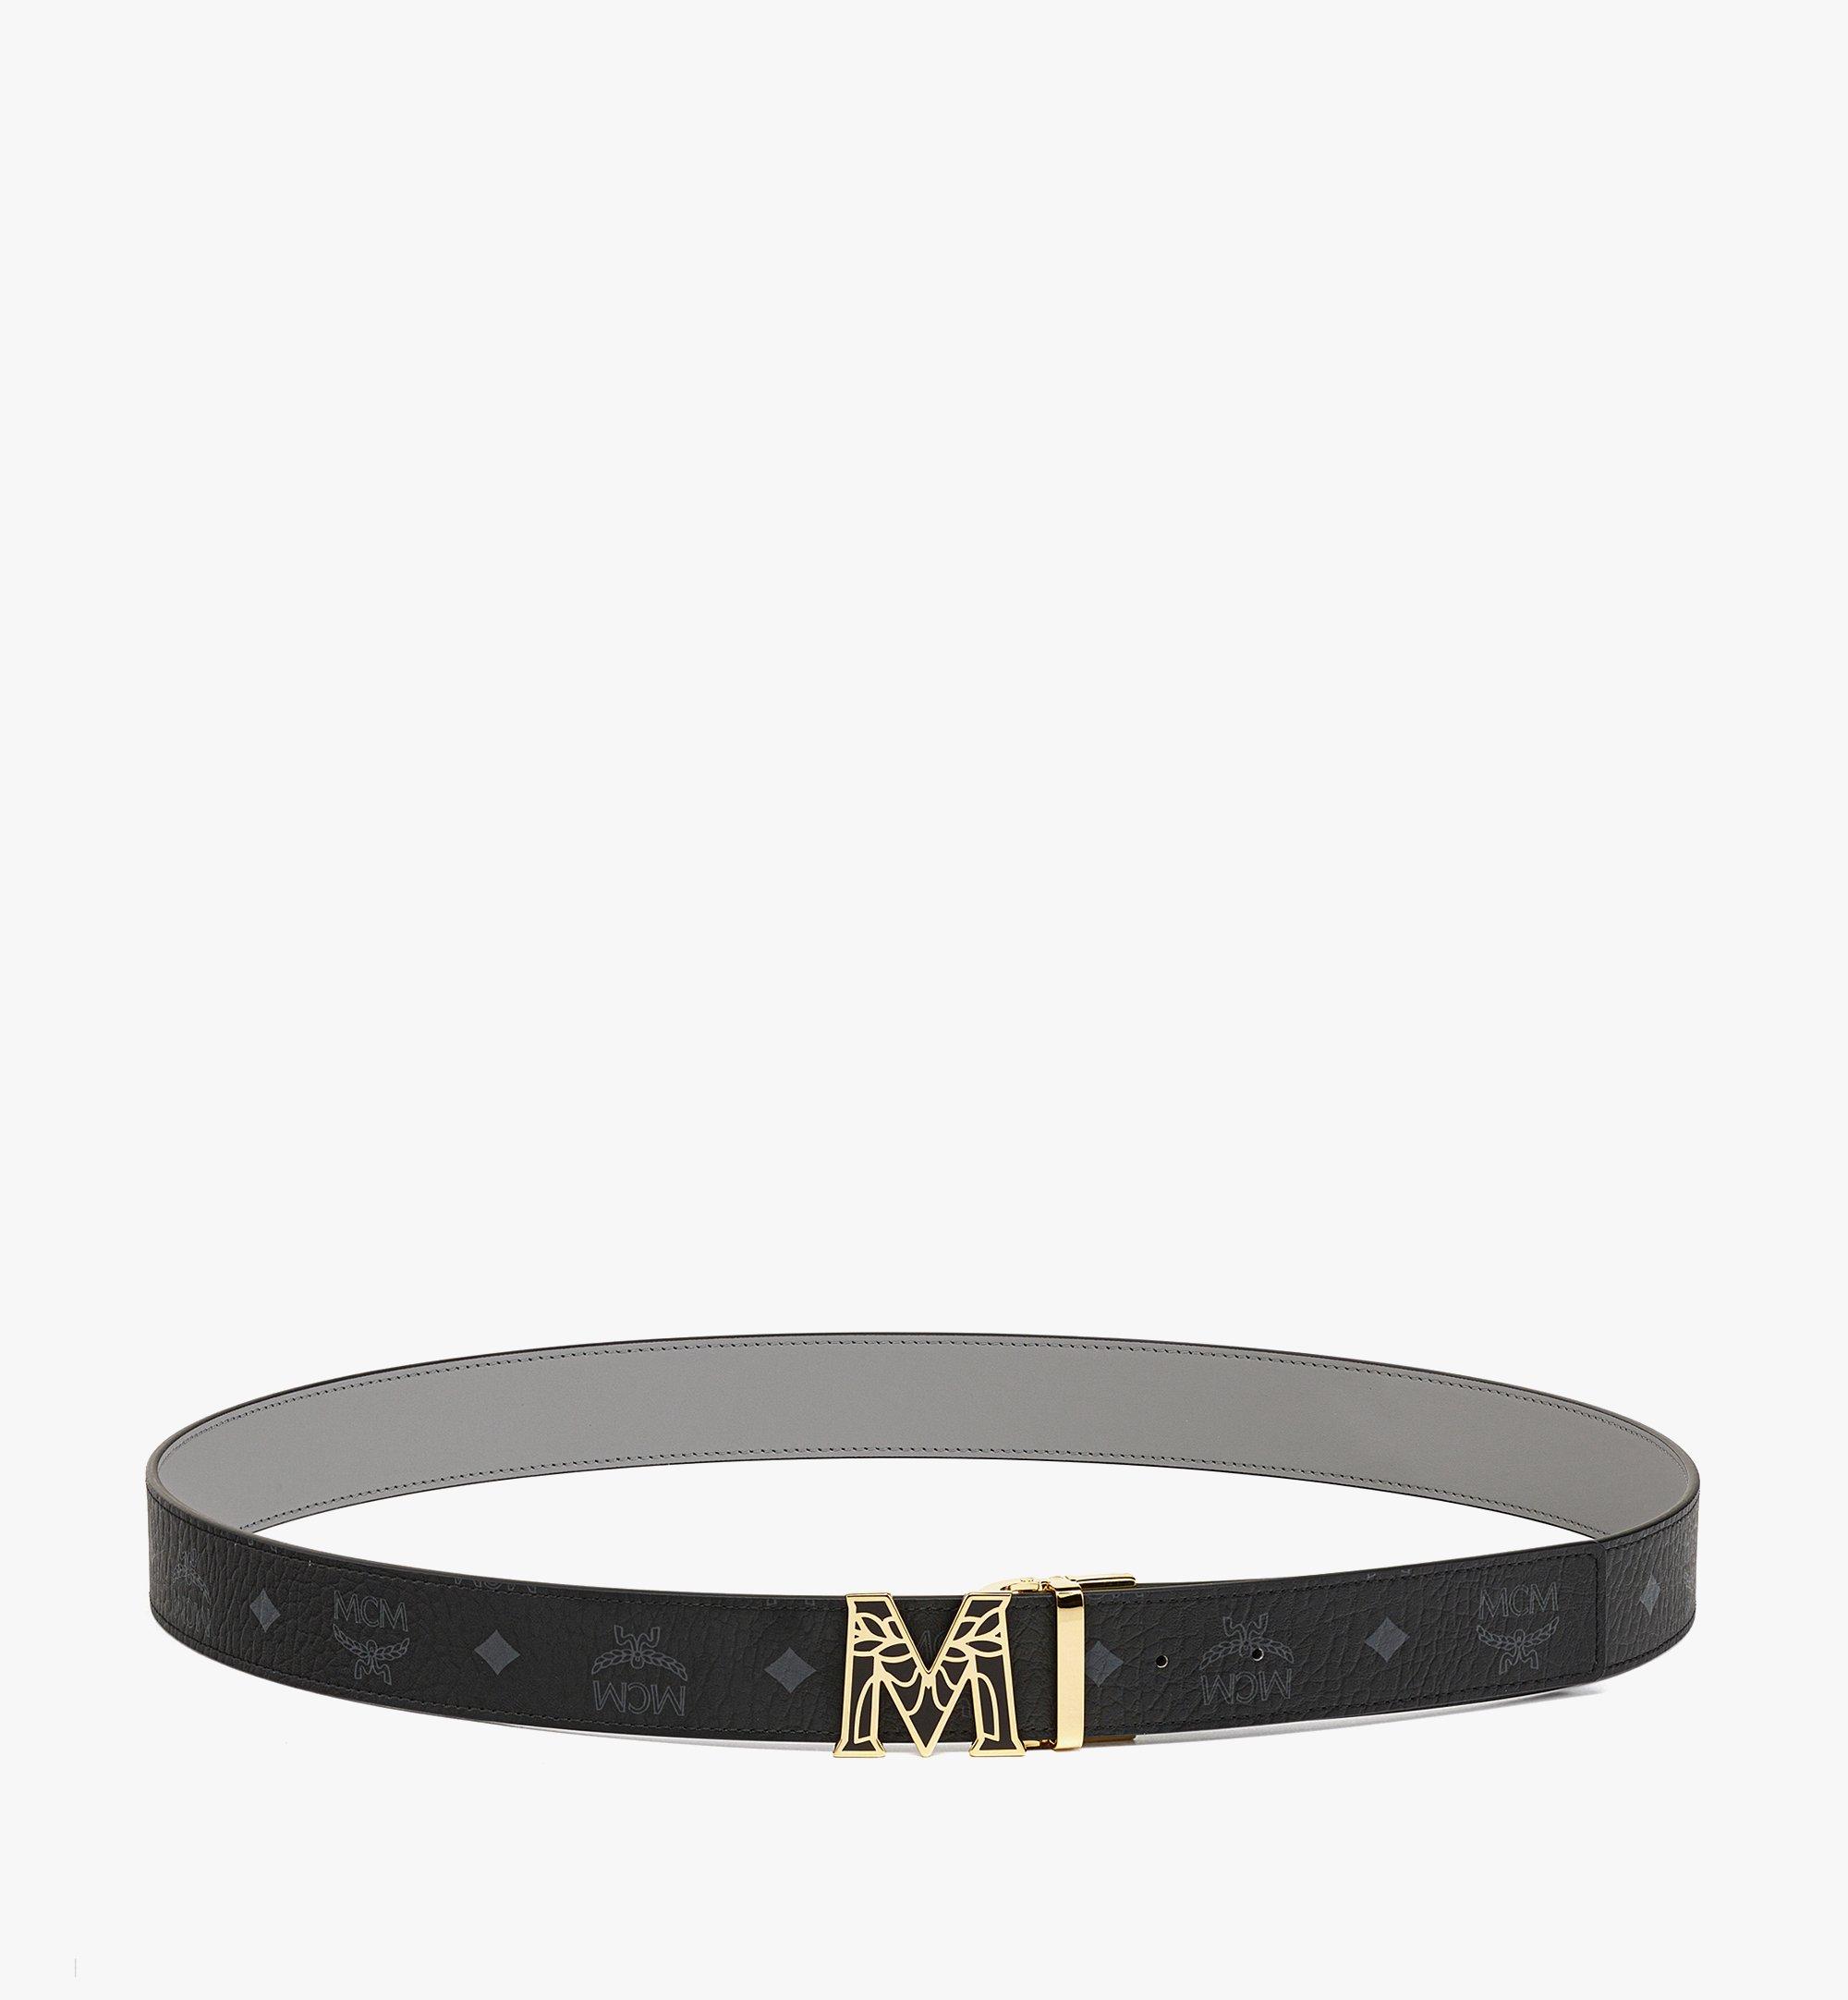 MCM Belts for Women